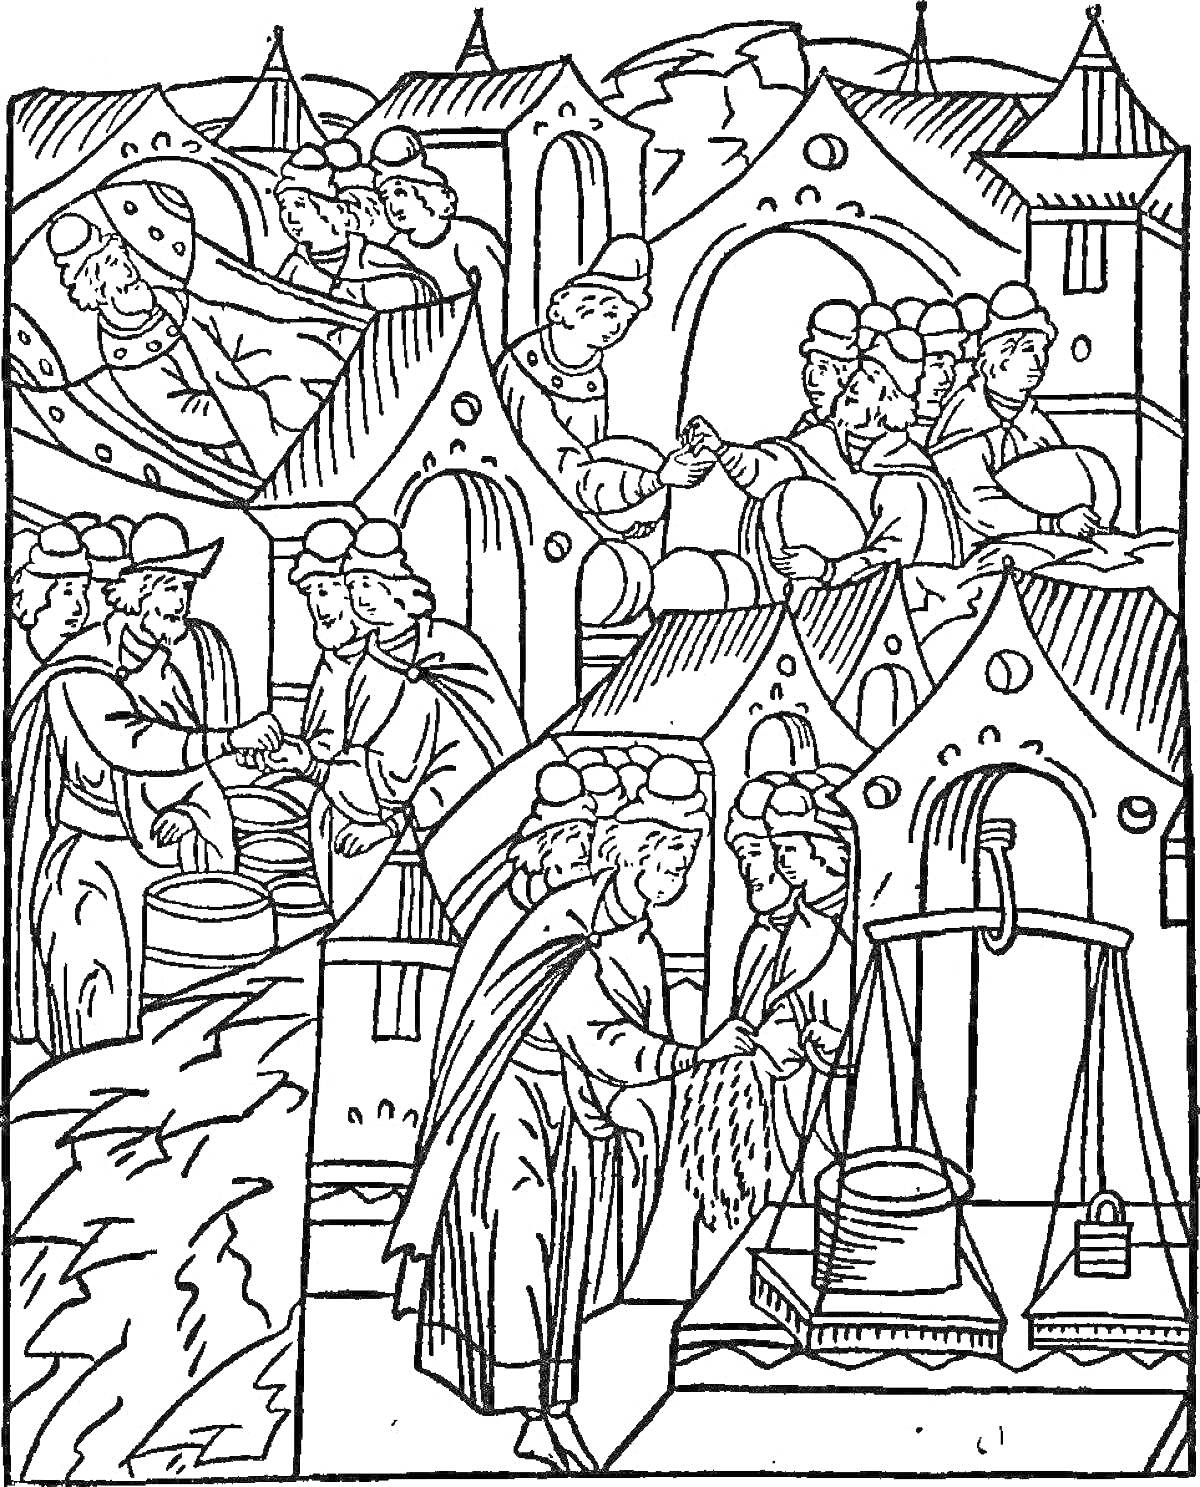 Раскраска Жизнь в средневековом городе: торговцы на рынке, сцены переговоров, взвешивание товара, покупка и продажа